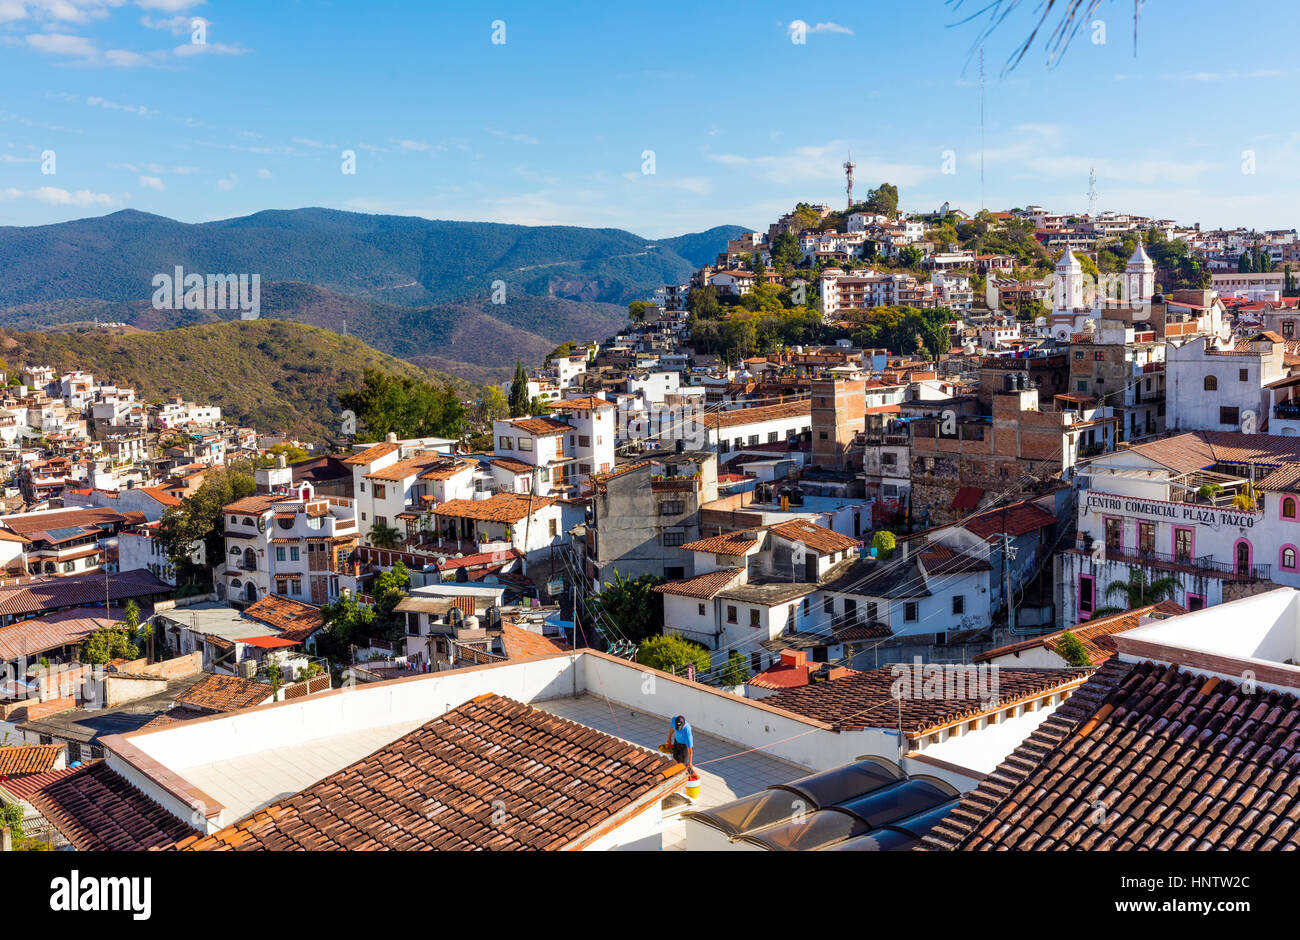 Areal vista de la ciudad de La Plata, Taxco, México Fotografía de stock -  Alamy